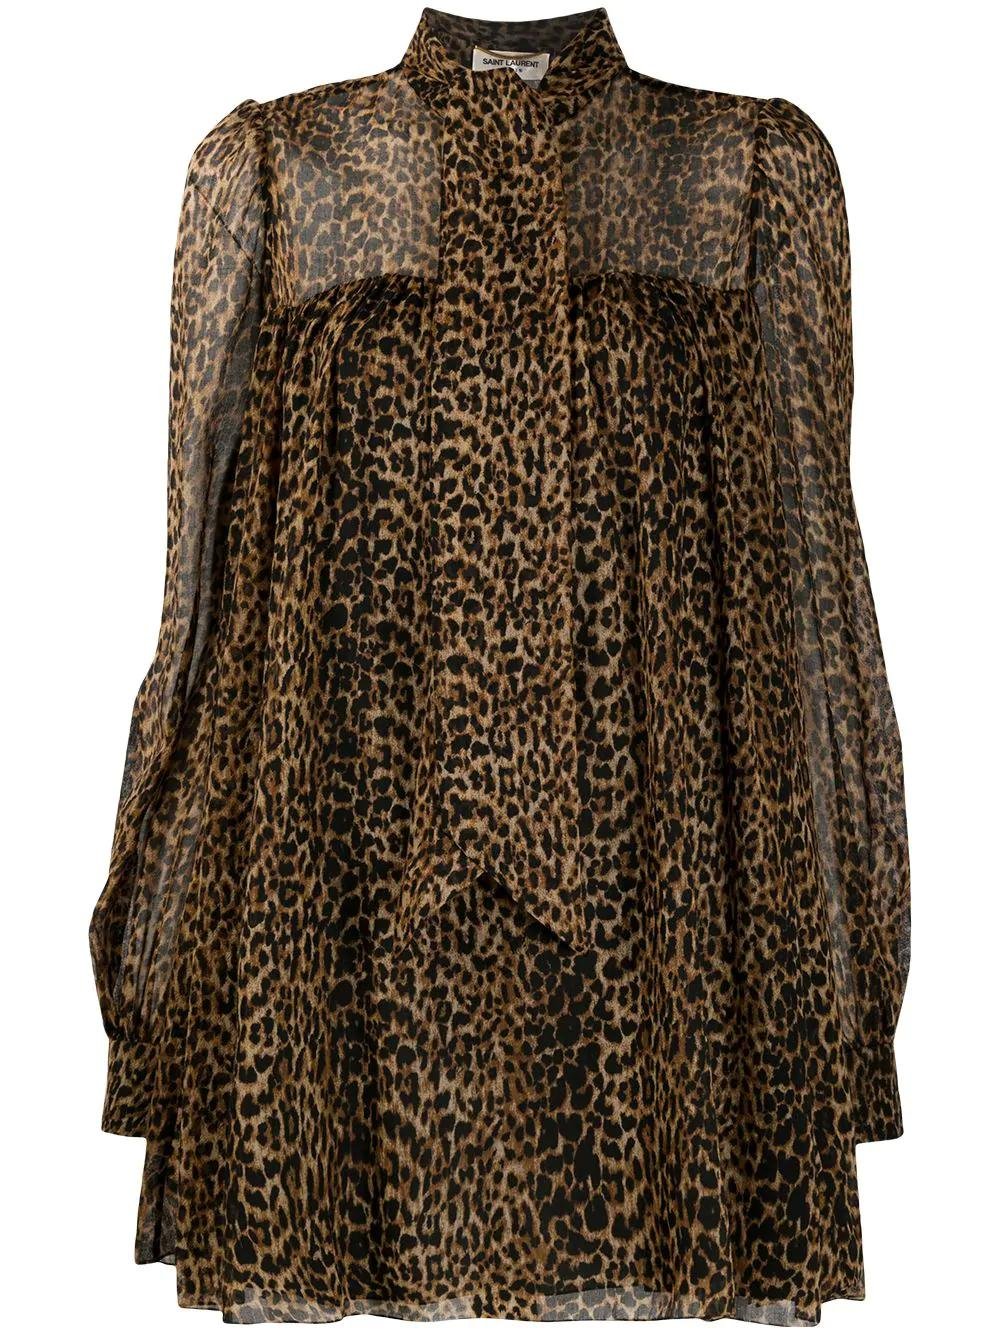 leopard-print flared dress by SAINT LAURENT